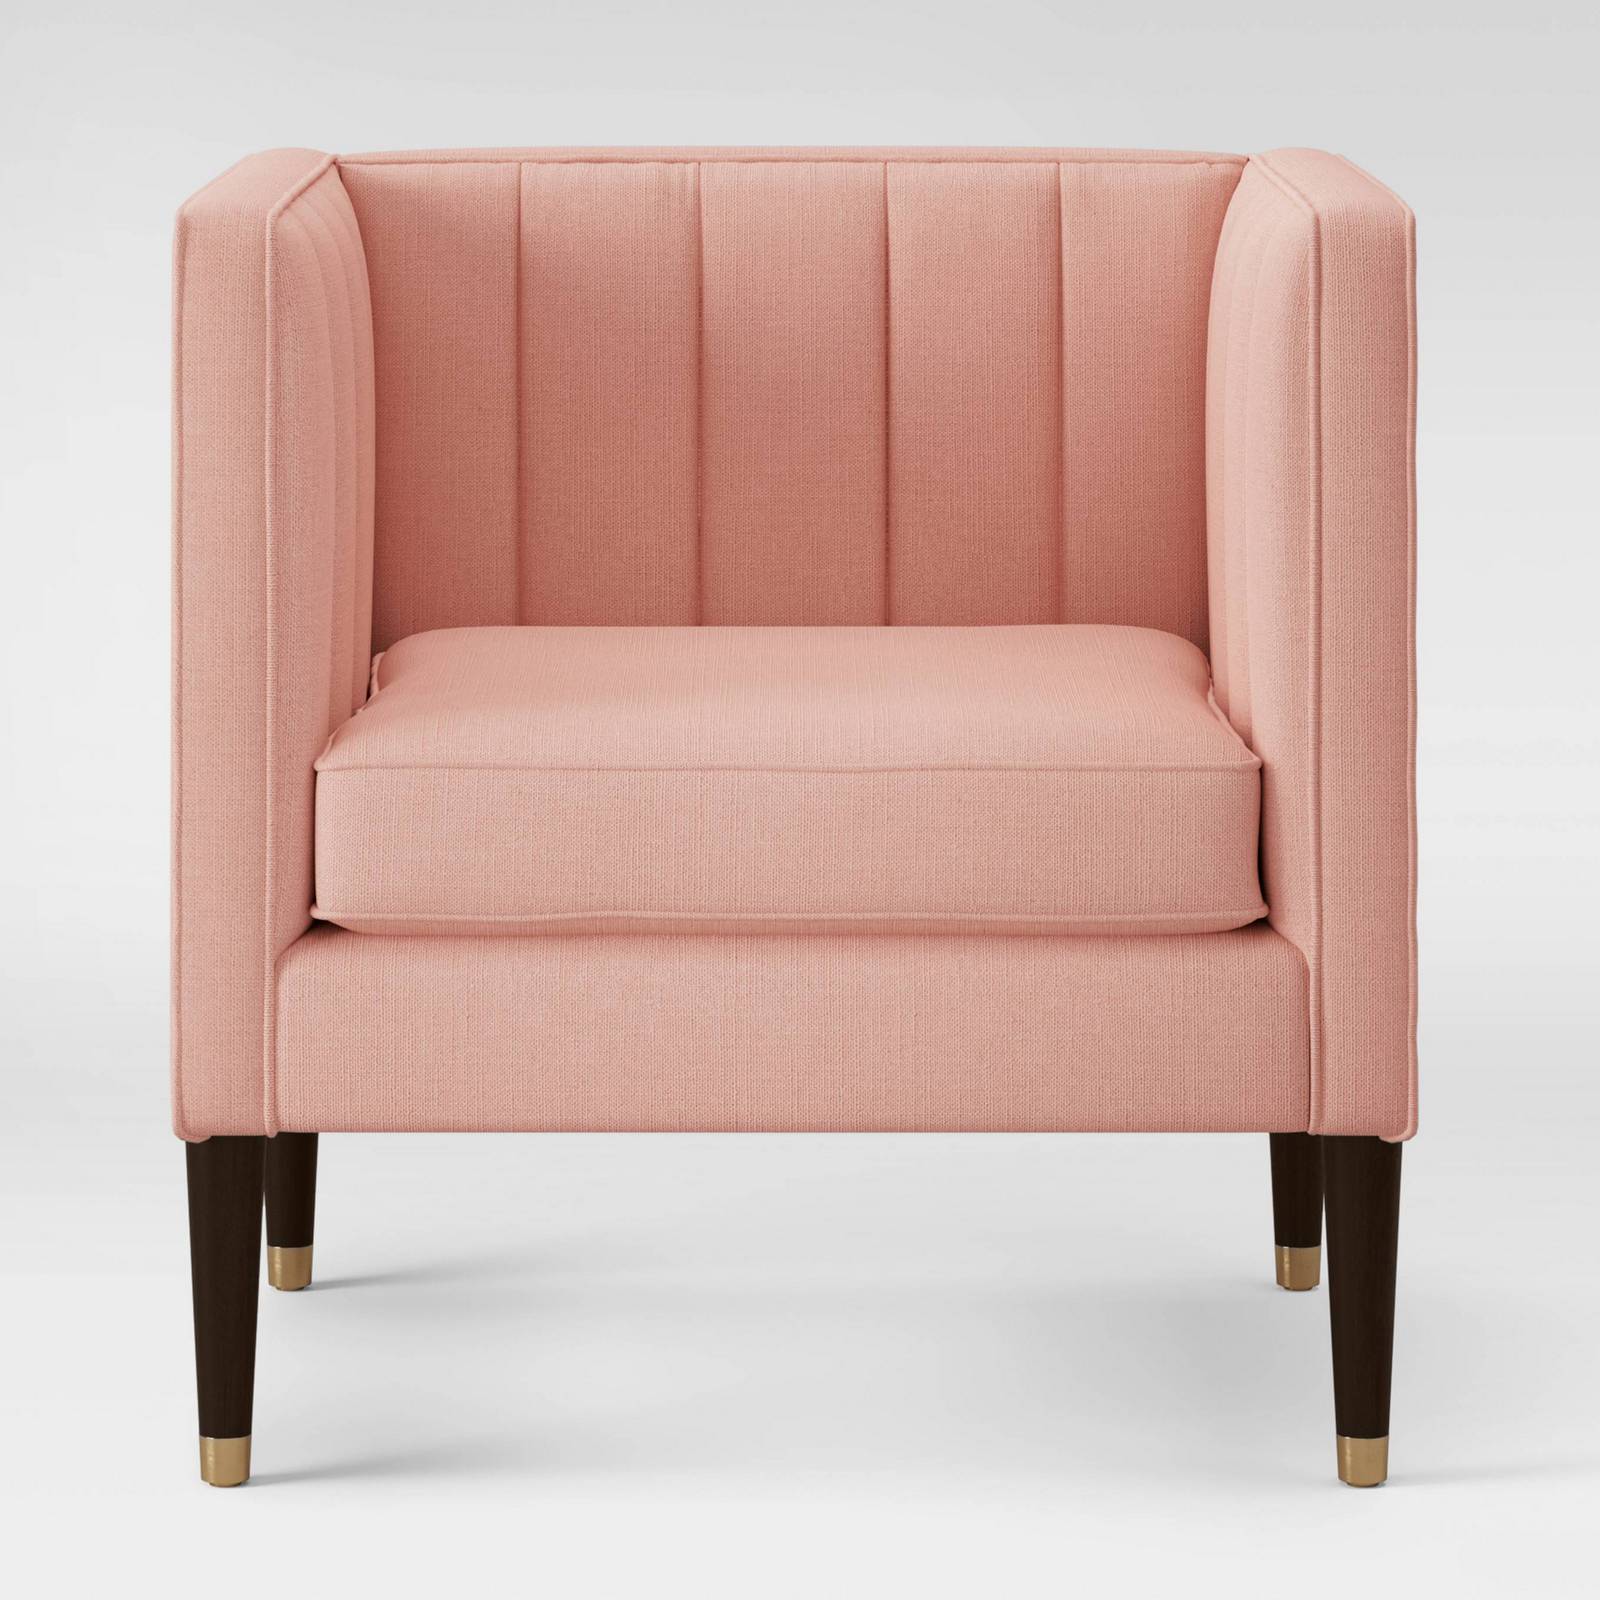 blush pink chair target